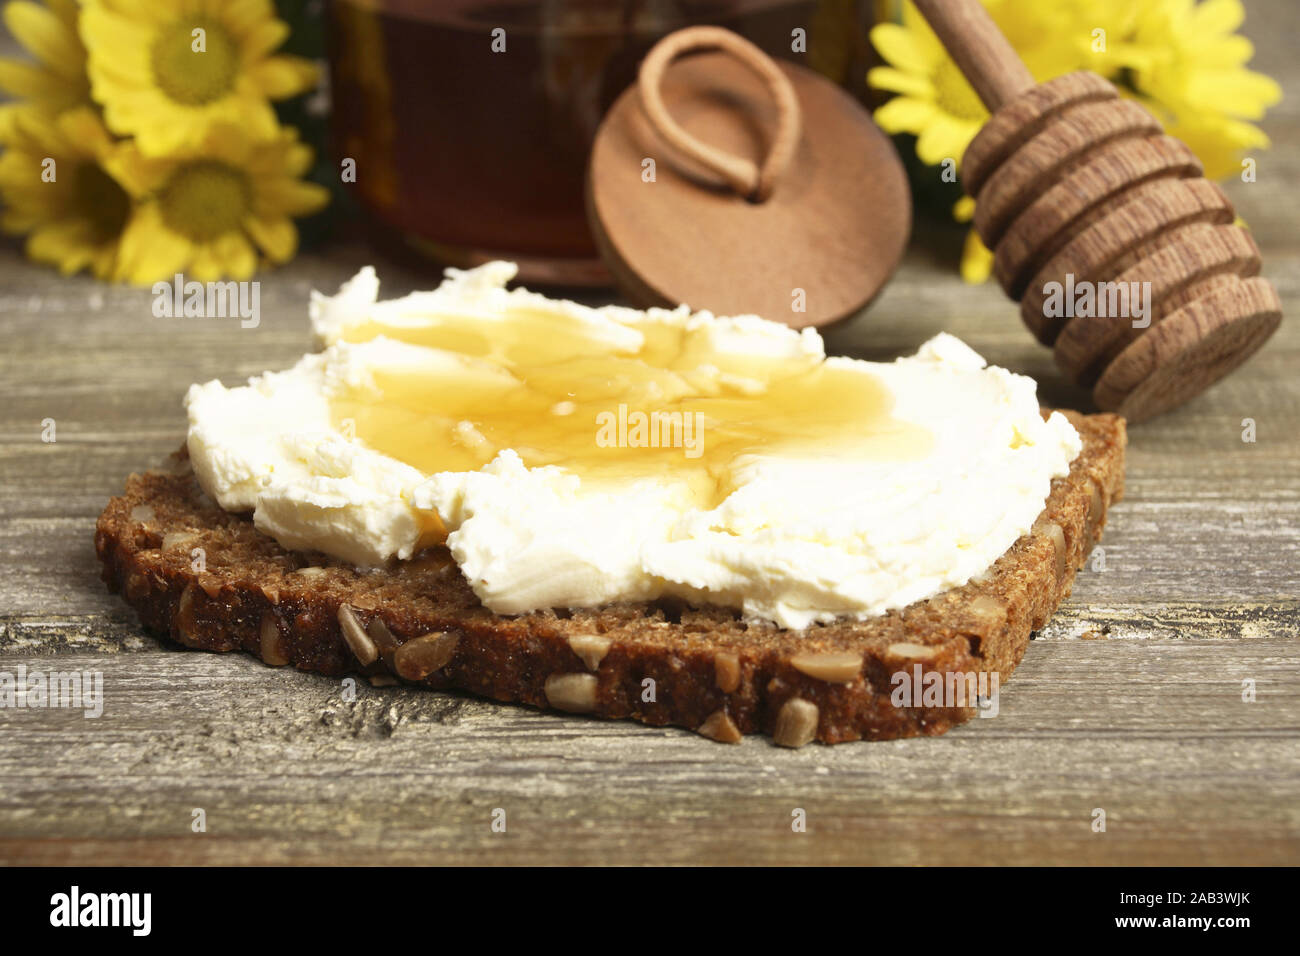 Vollkornbrot mit Frischk‰se und Honig |Wholemeal bread with cream ...